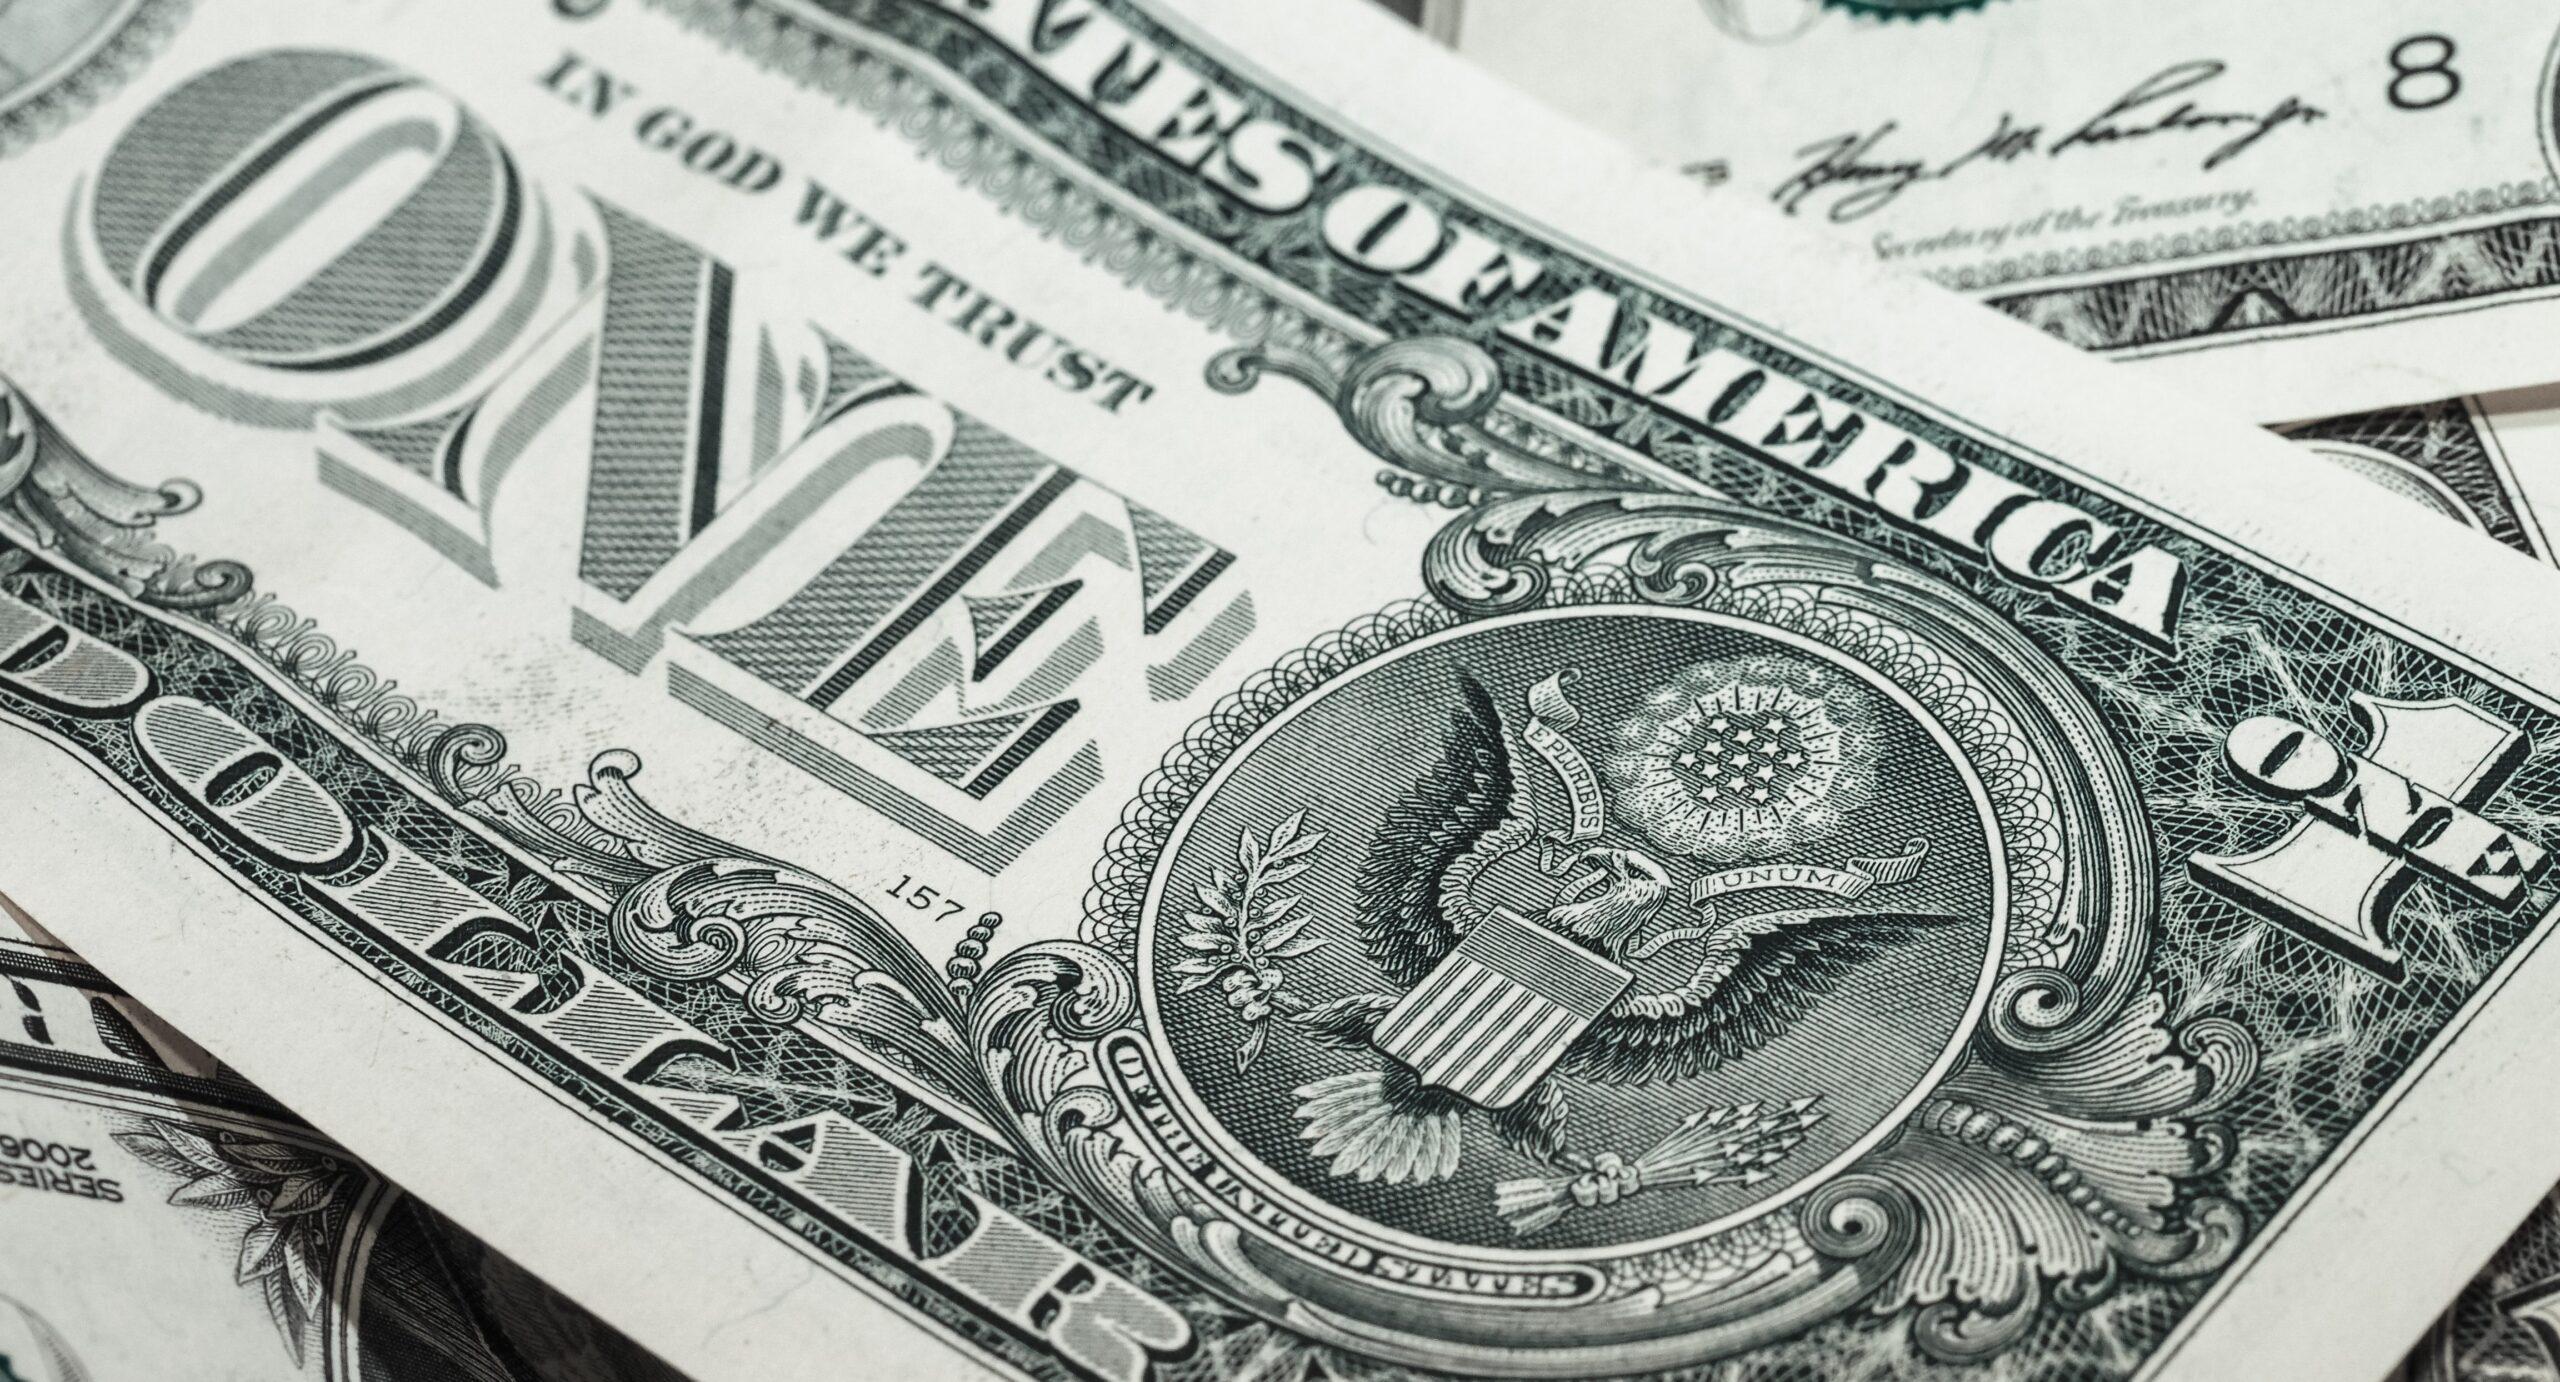 El dólar llega a 20.27 pesos a la venta, mientras la Fed decide mantener sus tasas de interés